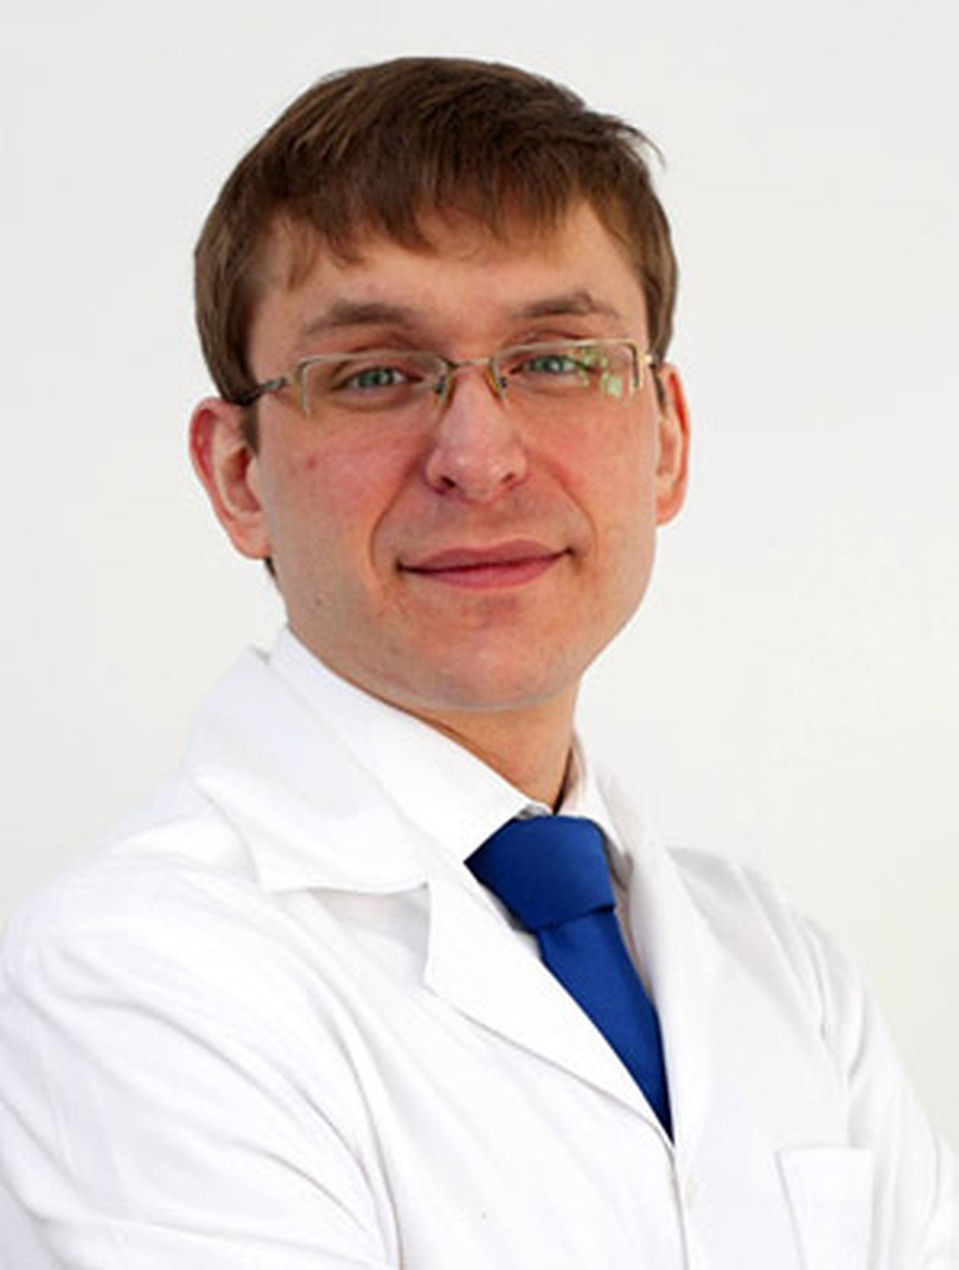 Черкасов Михаил Евгеньевич, Врач-колопроктолог медицинского центра «Глобал клиник». 